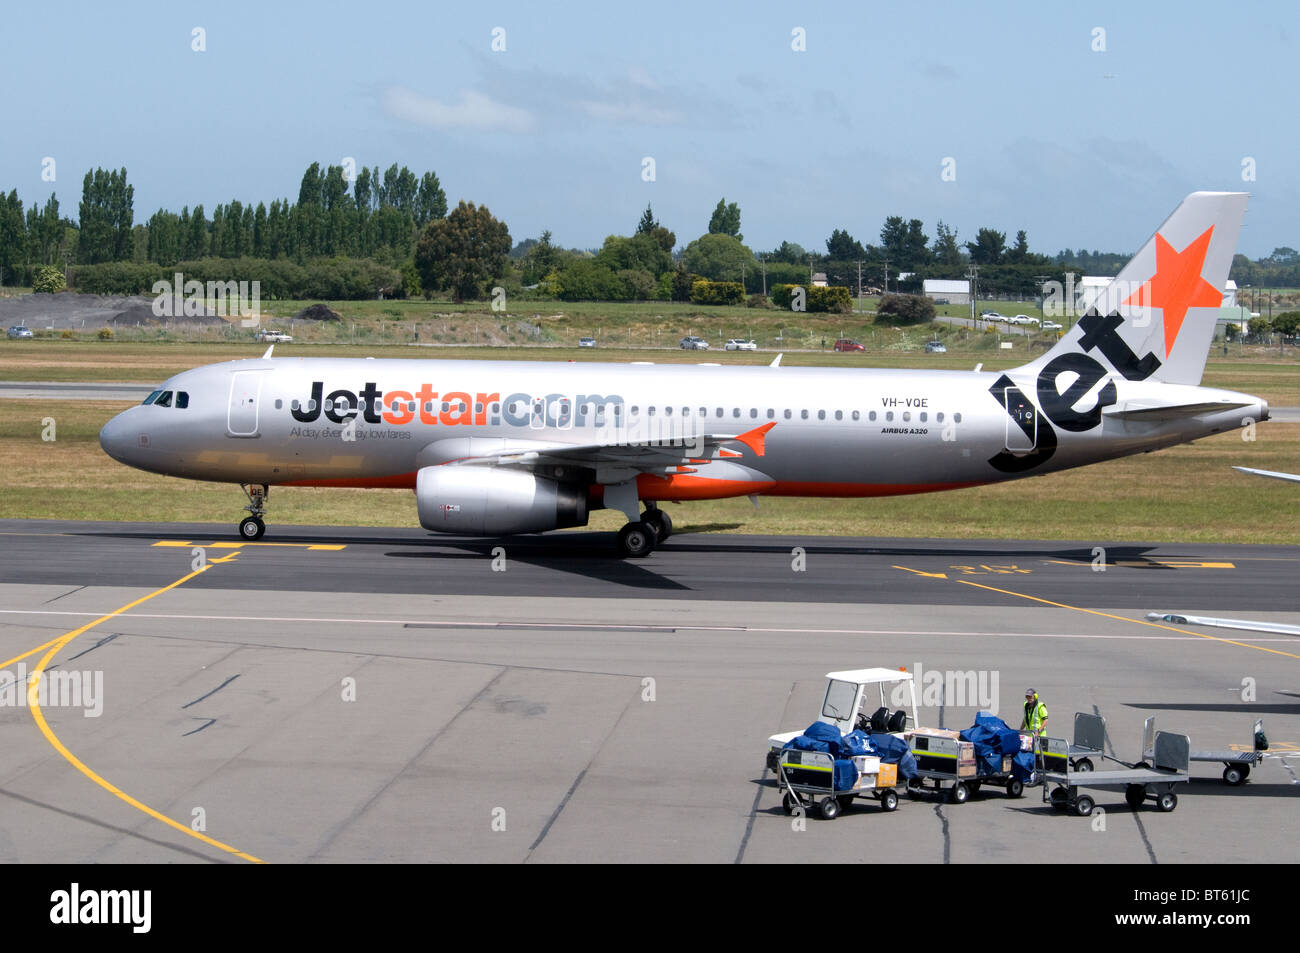 Aerolínea australiana jet star aerolínea air bus canguro insignia del logotipo de cola de 330, 737, 767, A330, aire, Airbus, Aviones, un avión de pasajeros Foto de stock